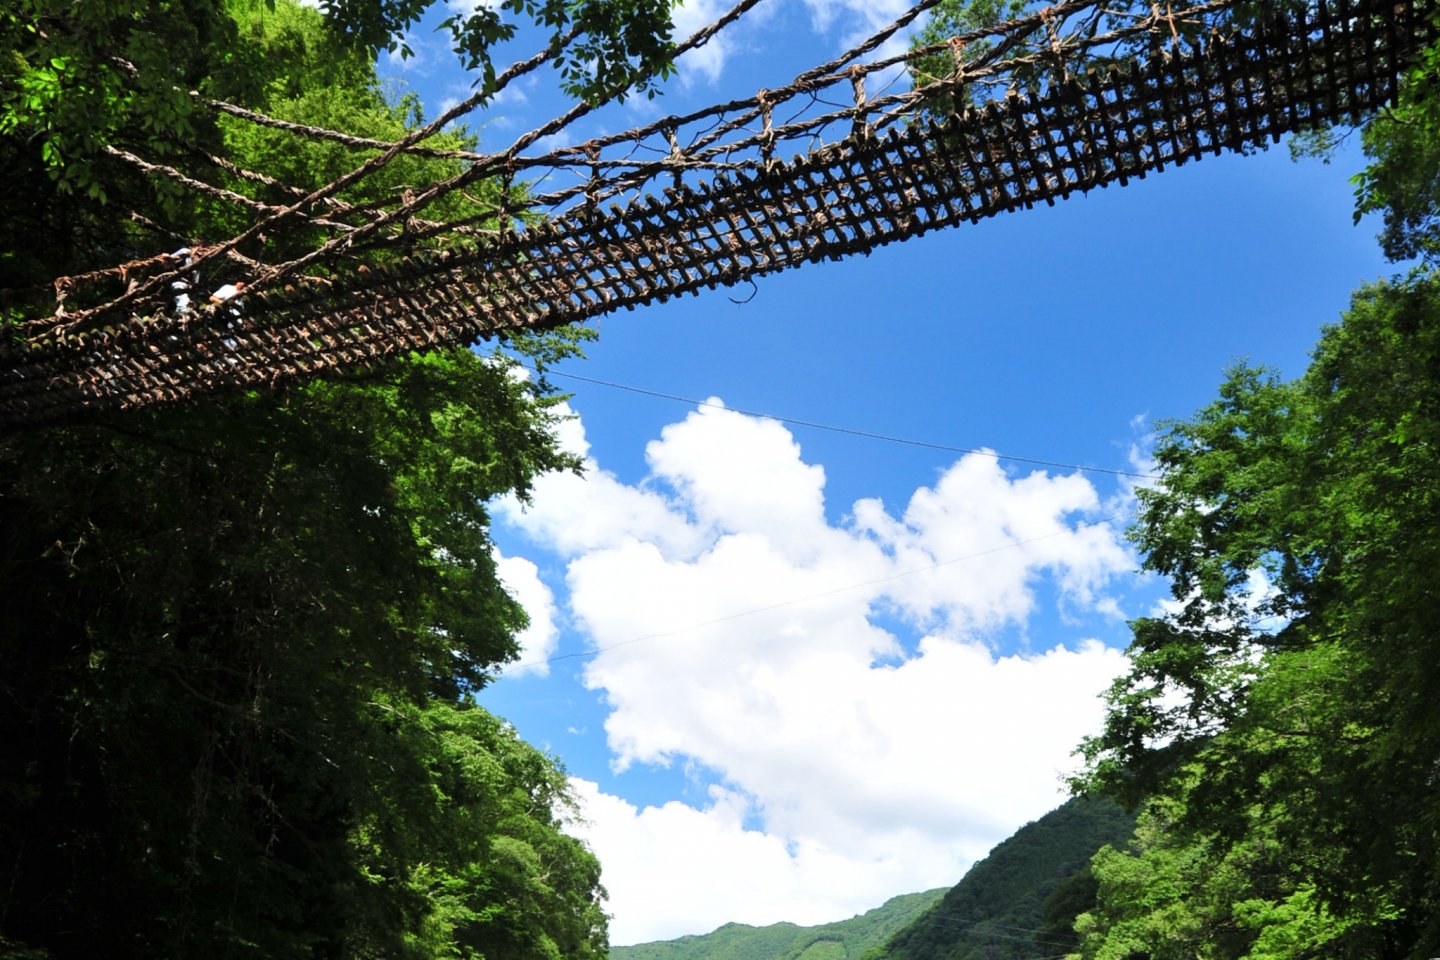 Kazurabashi vine bridge in the Iya Valley